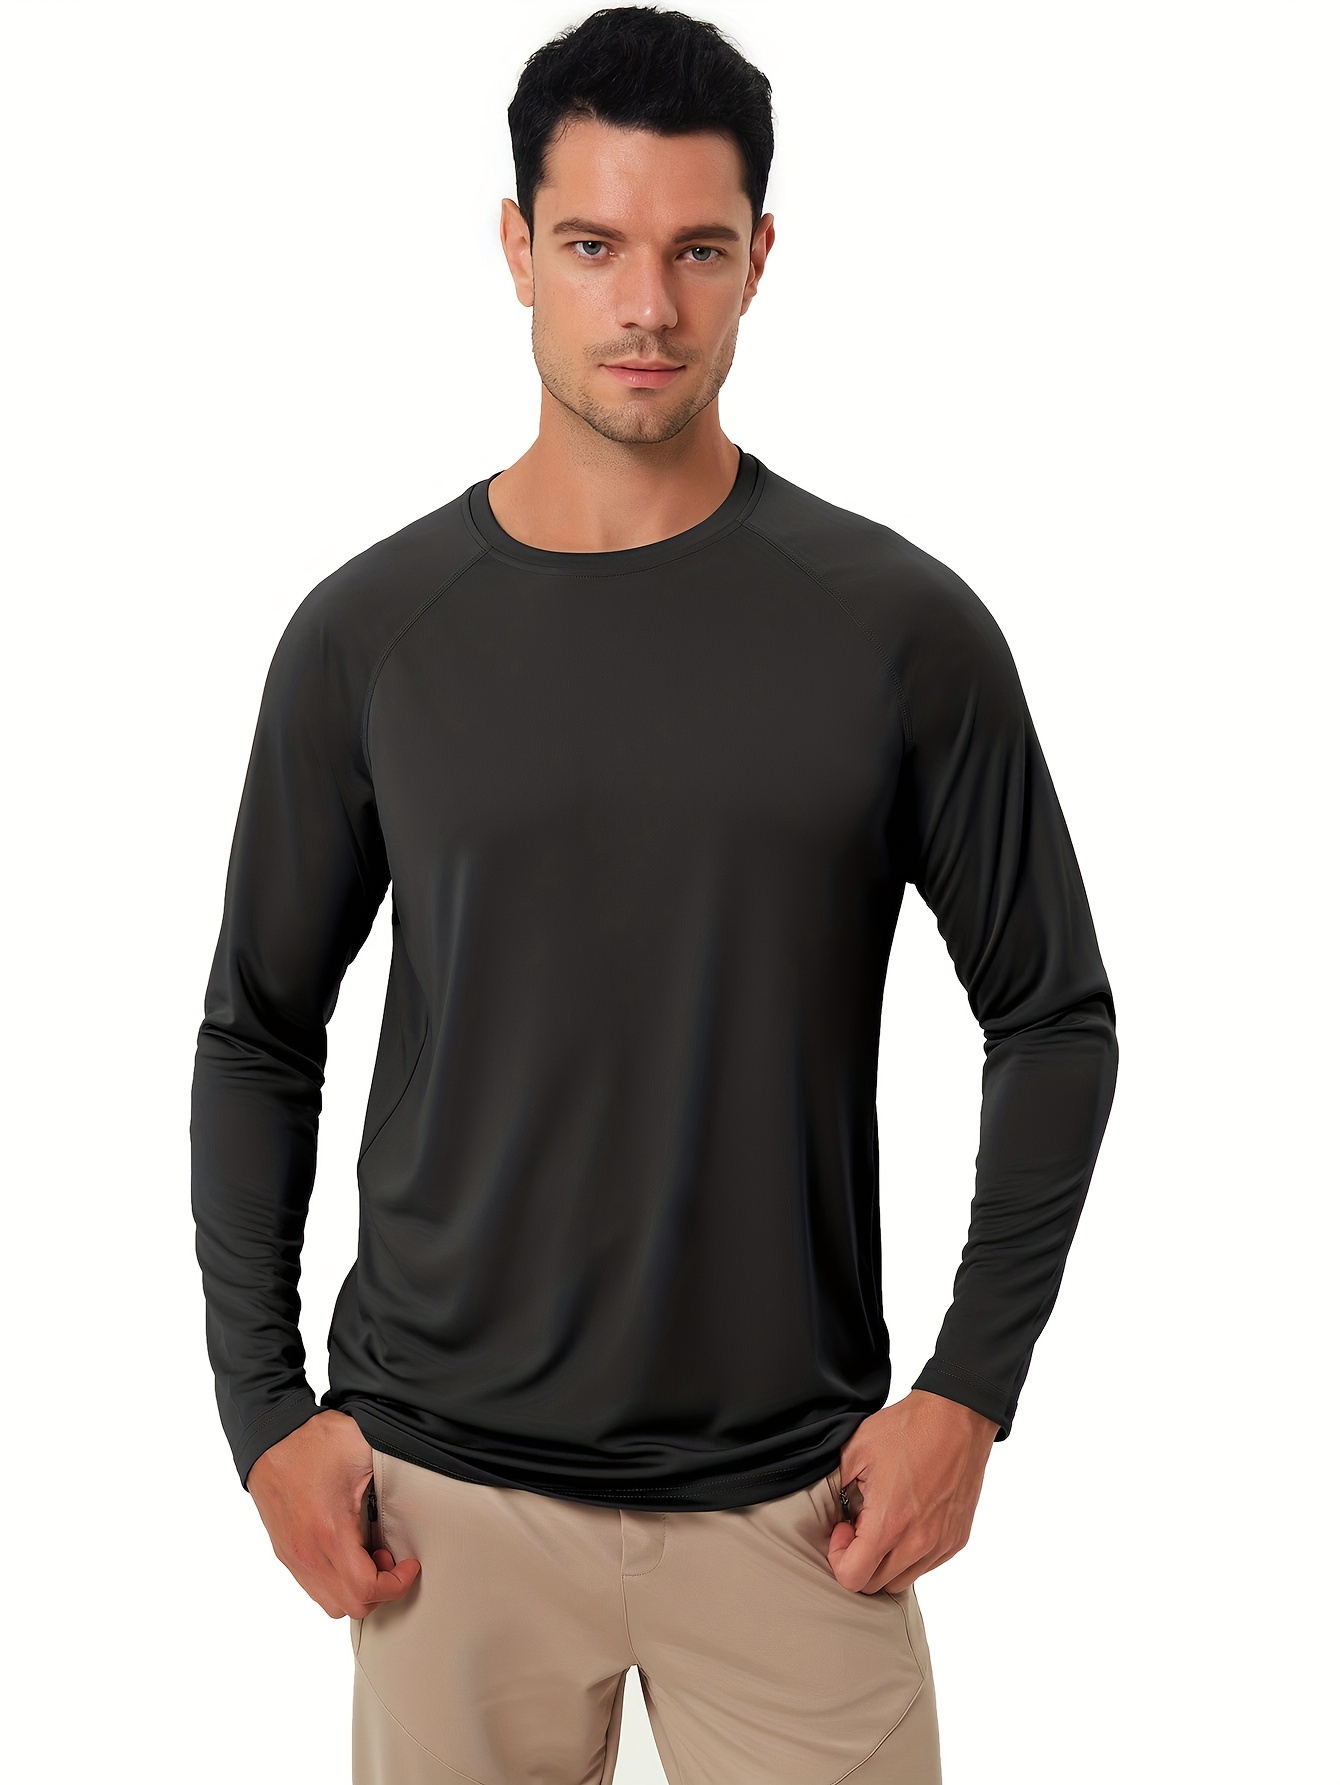 Men's Running Long-sleeved T-shirt UV Protection (UPF 50+) Black